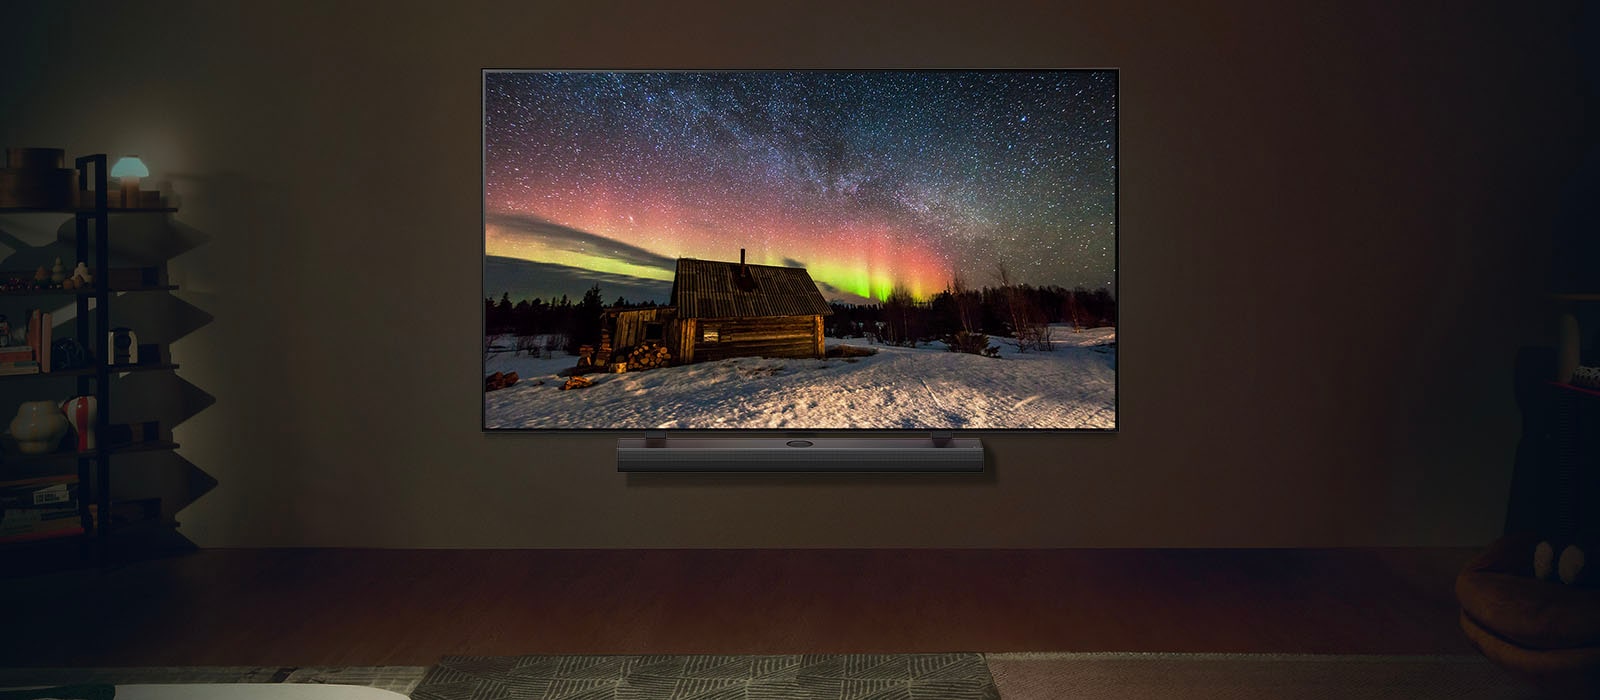 Изображение телевизора LG TV и звуковой панели LG Soundbar в современном жилом пространстве в ночное время. Изображение северного сияния отображается с идеальными уровнями яркости.